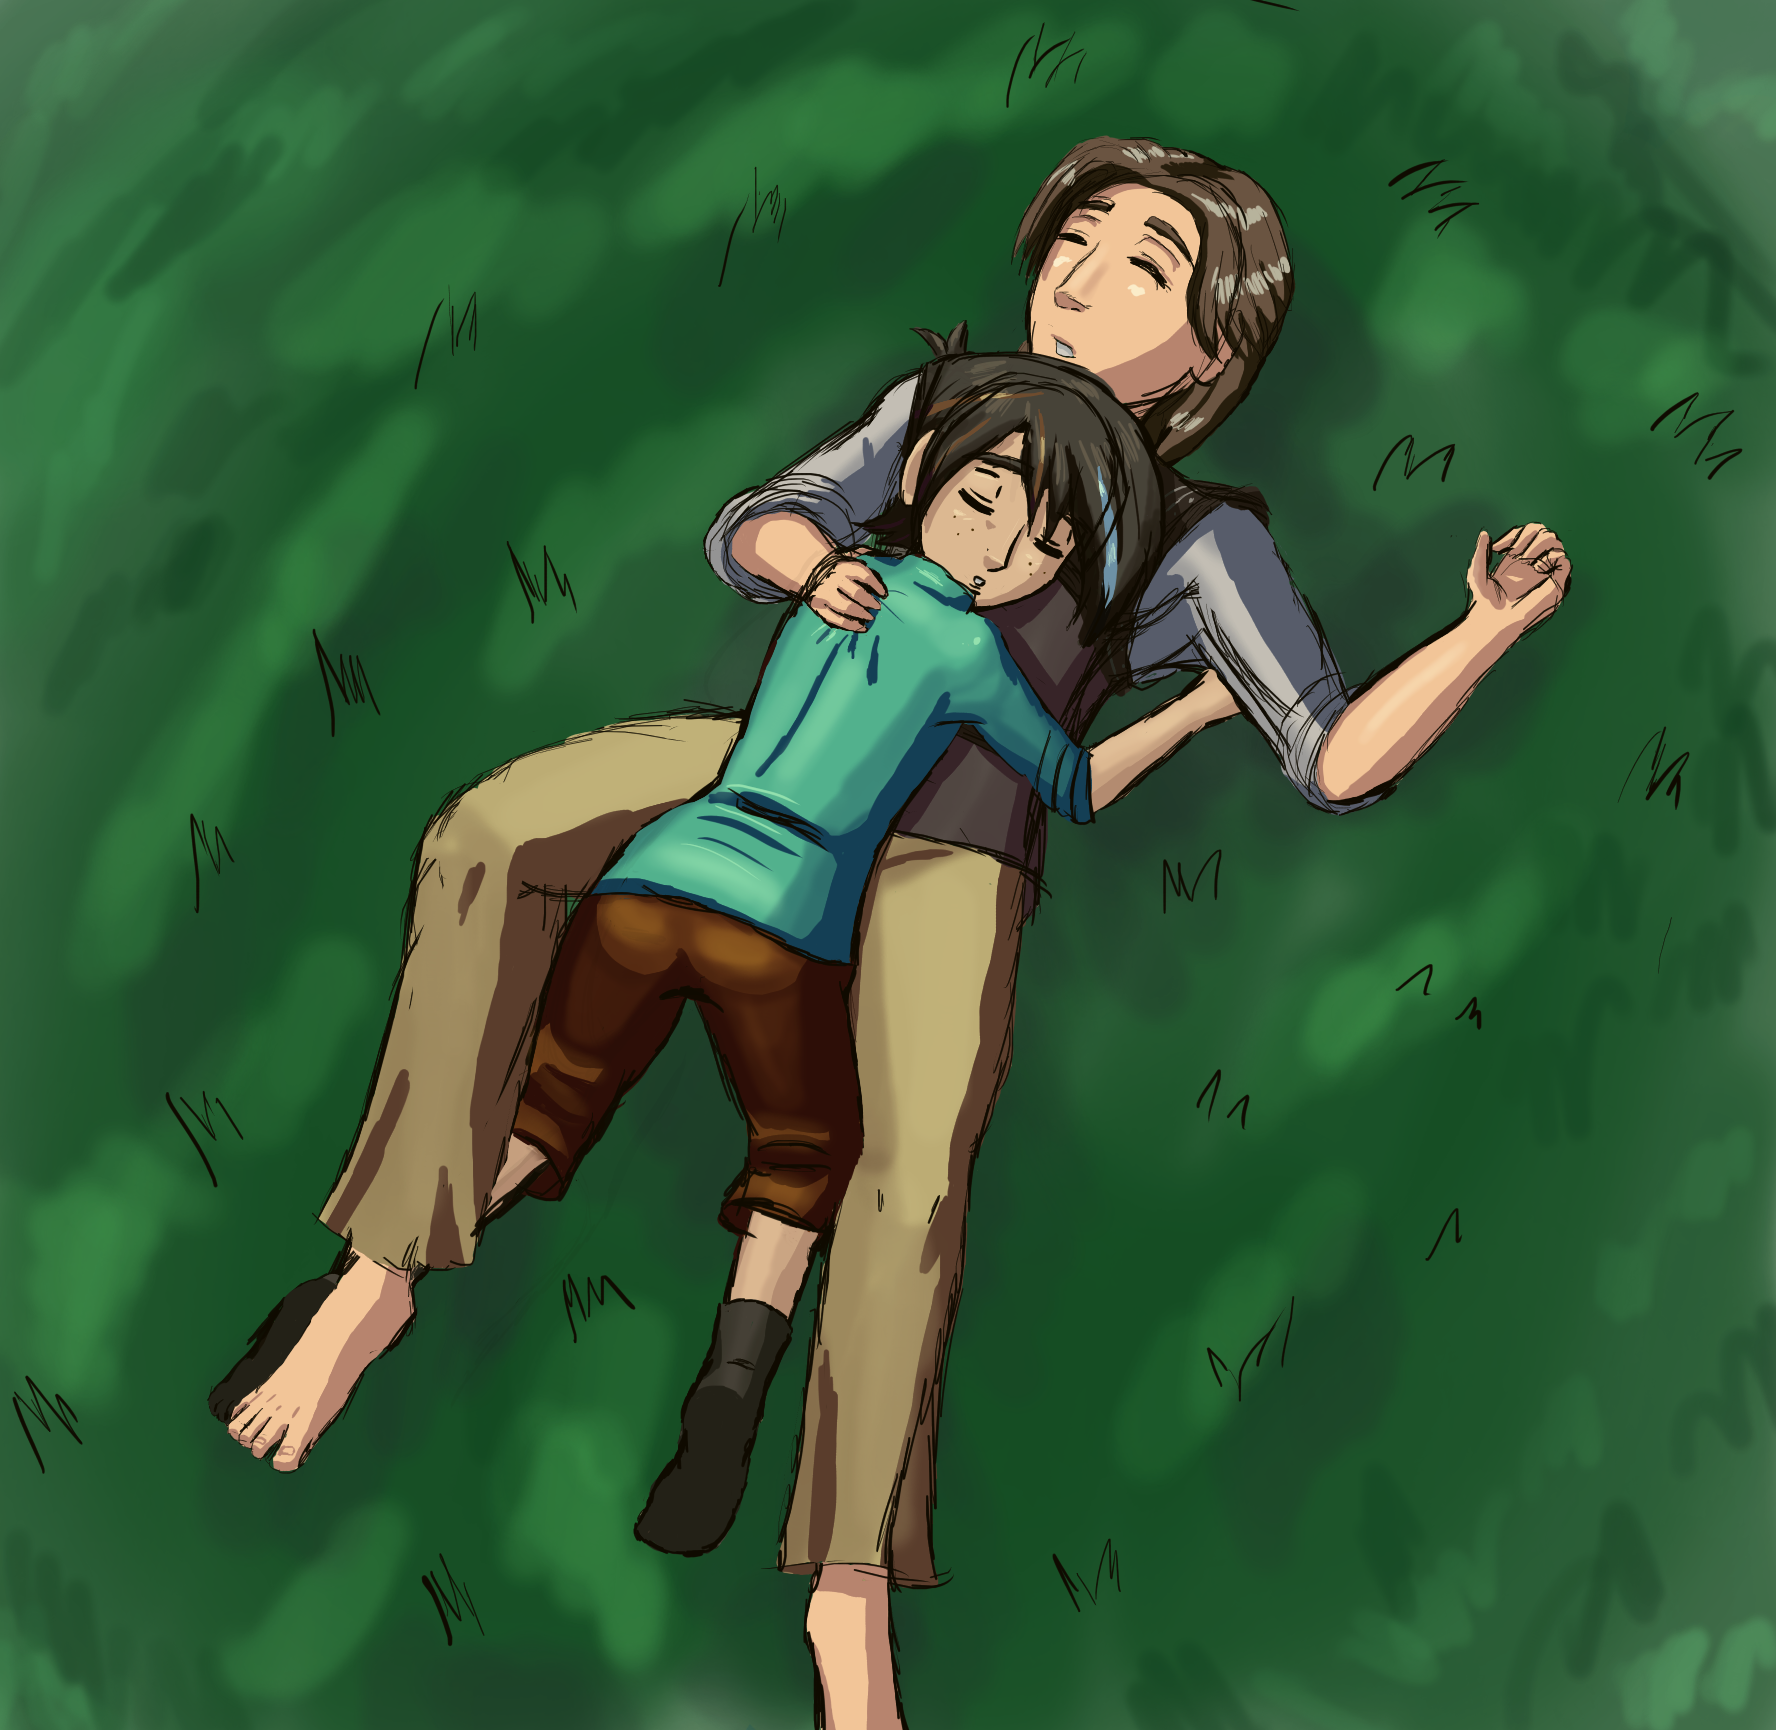 Sleeping Together by Meiguoren